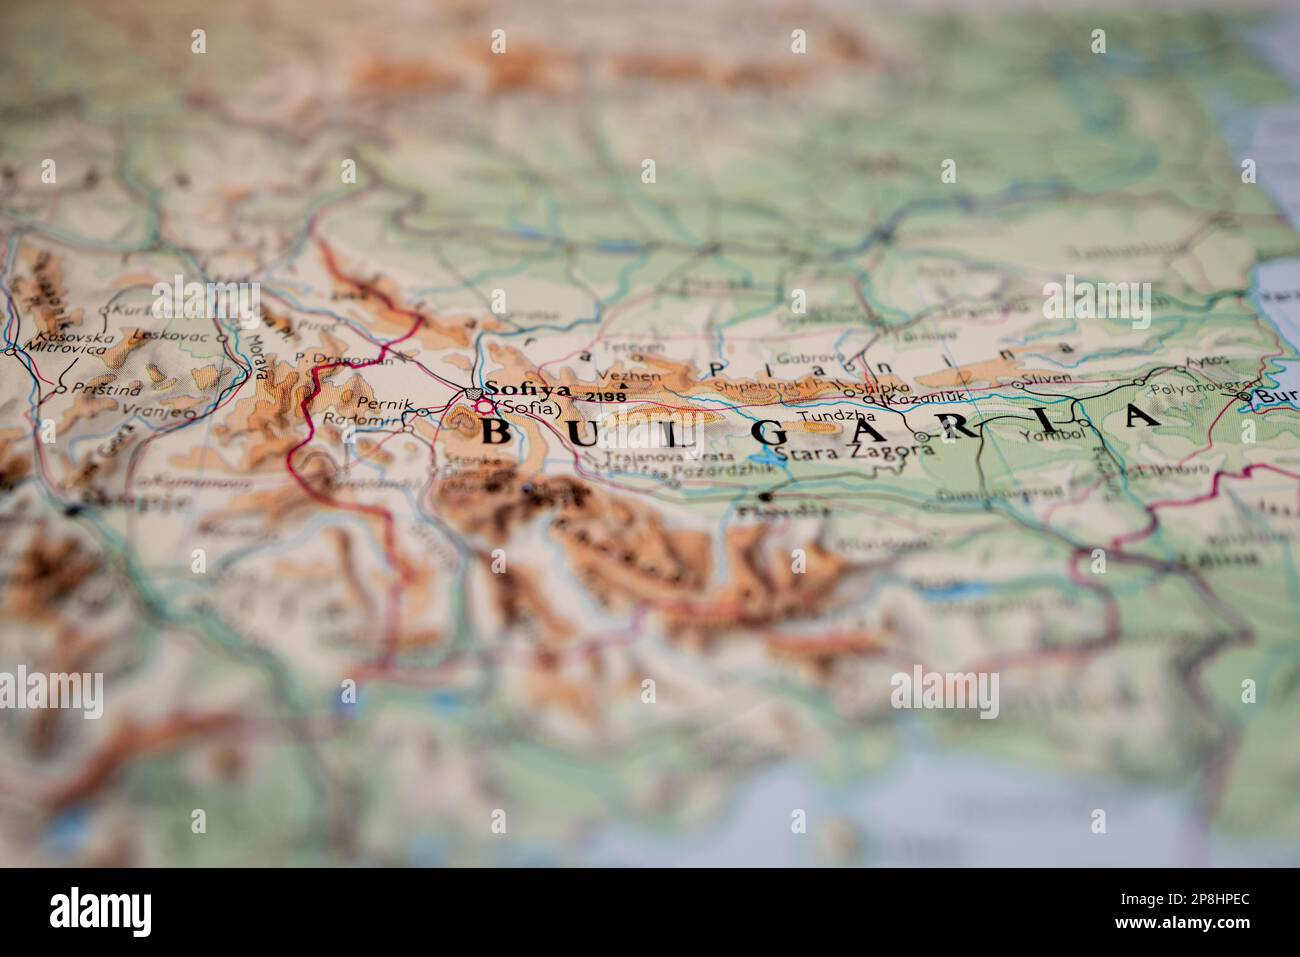 Primo piano di una mappa cartacea generica, che mostra il focus poco profondo di Sofia, la capitale. Mostra rilievo topografico delle regioni montane. Foto Stock